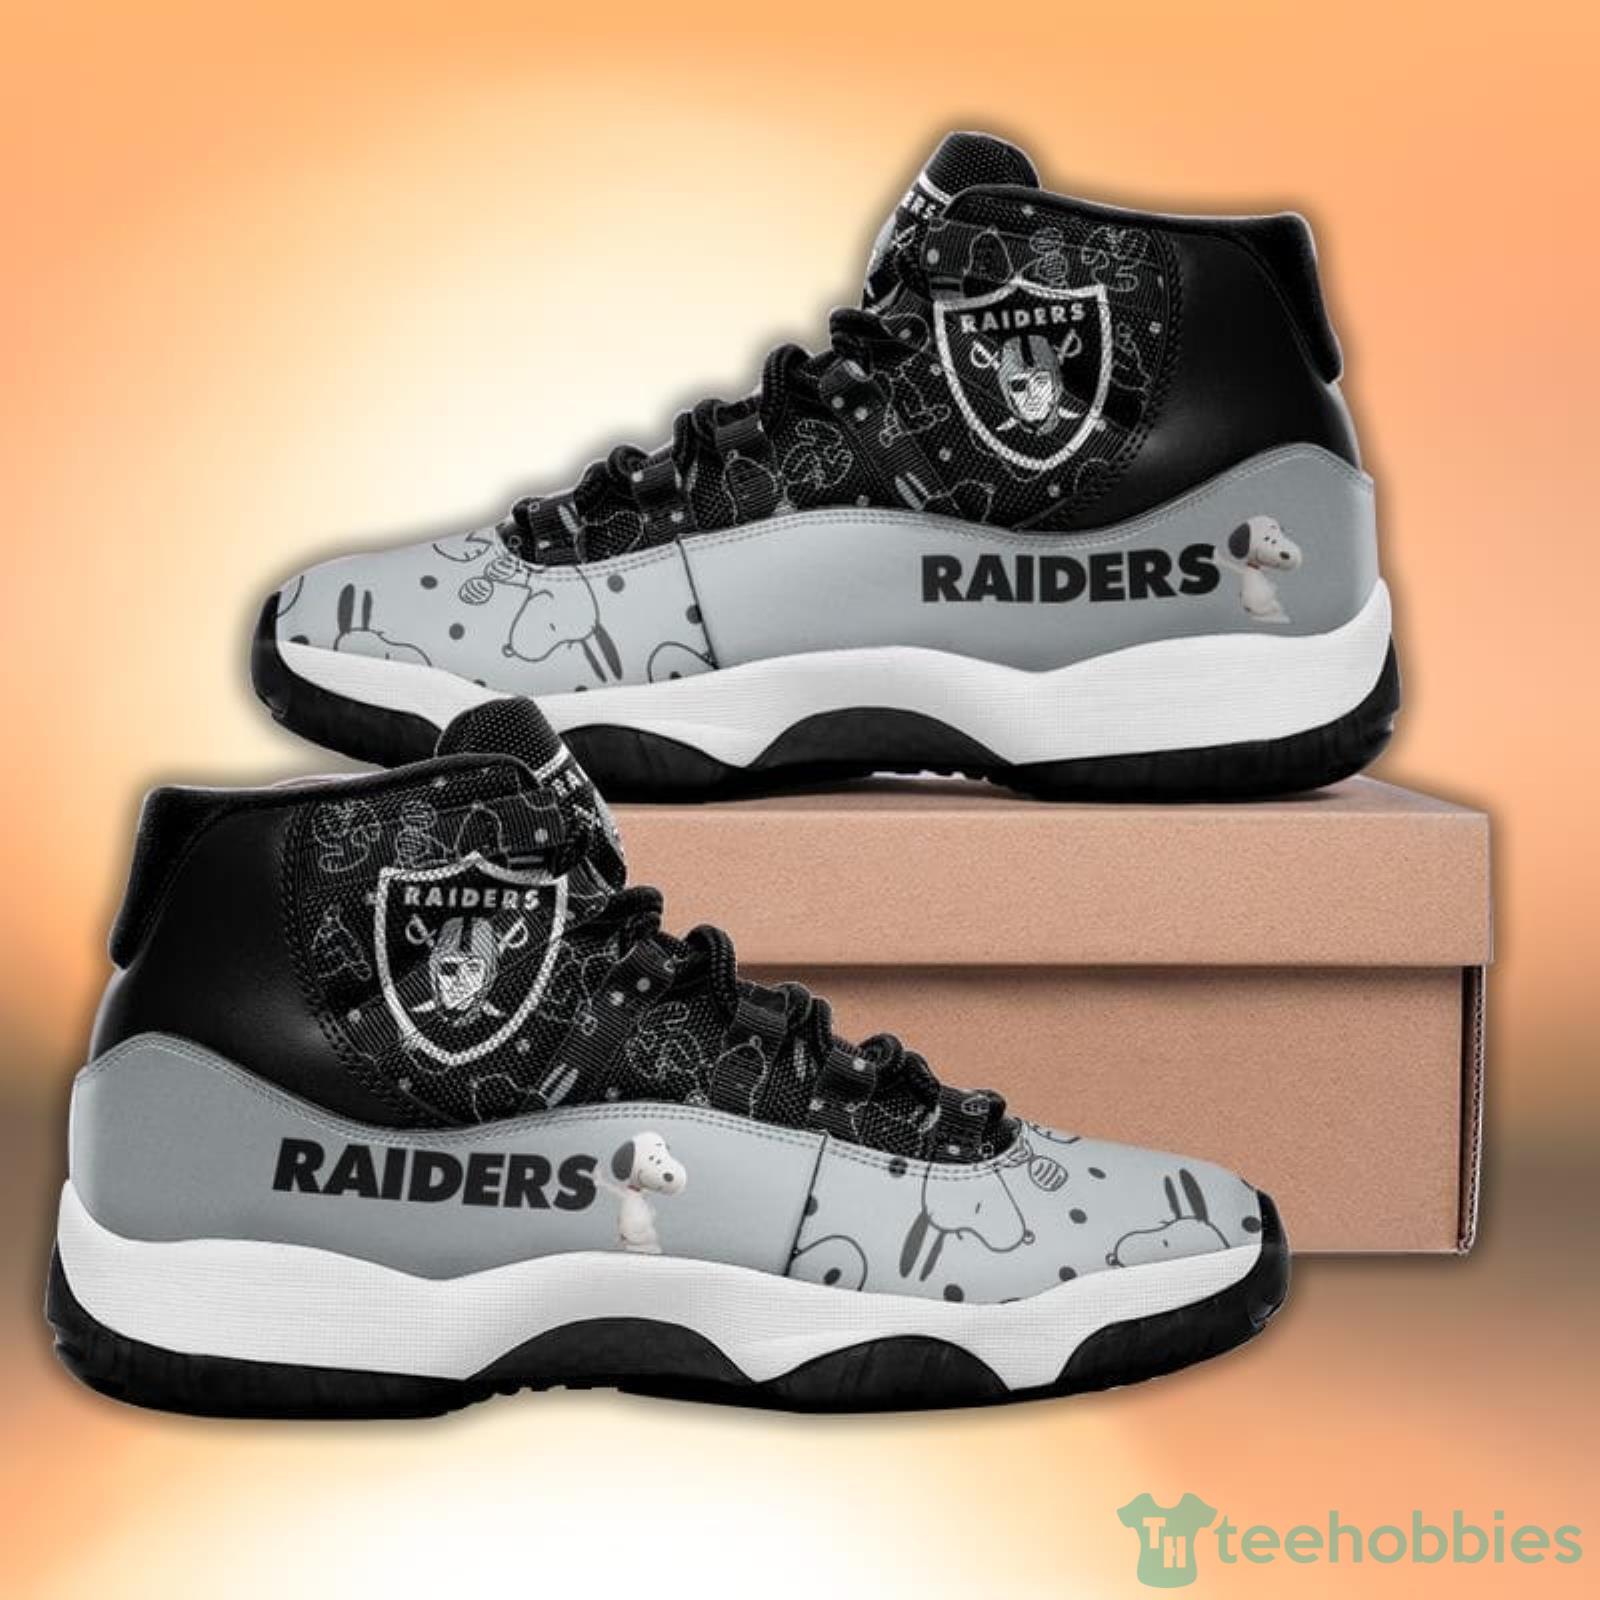 Las Vegas Raiders Snoopy Pattern Style Sneaker Air Jordan 11 Shoes